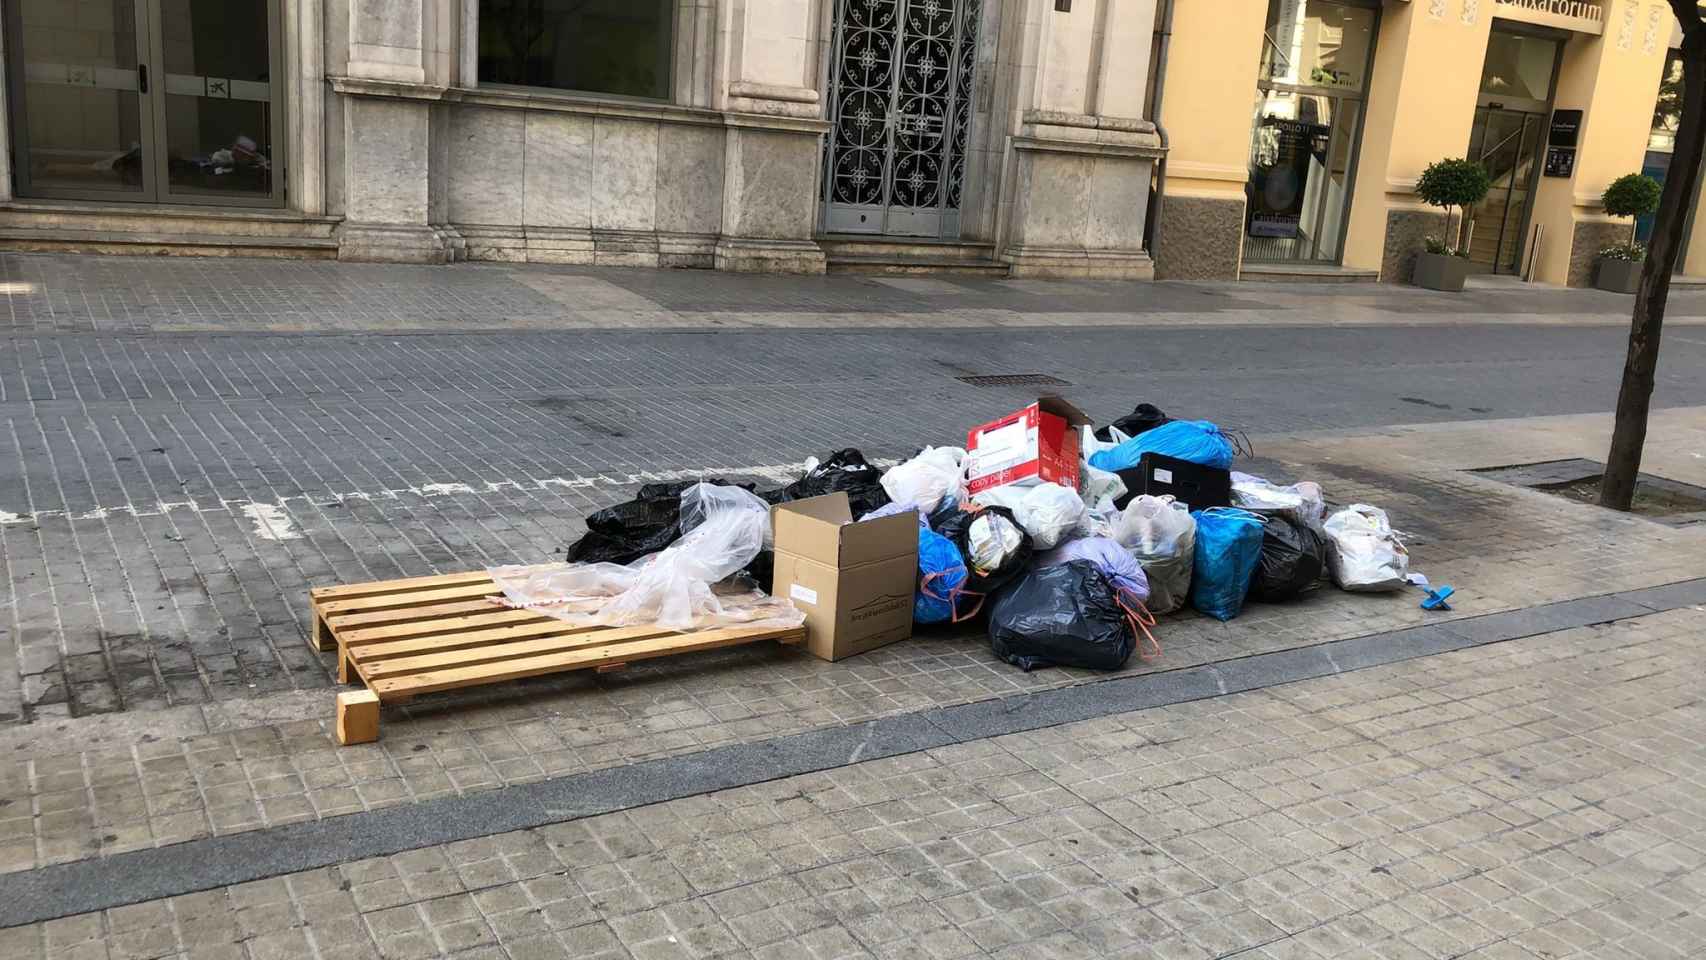 Bolsas basura en una calle Lleida, fuera del contenedor / EUROPA PRESS